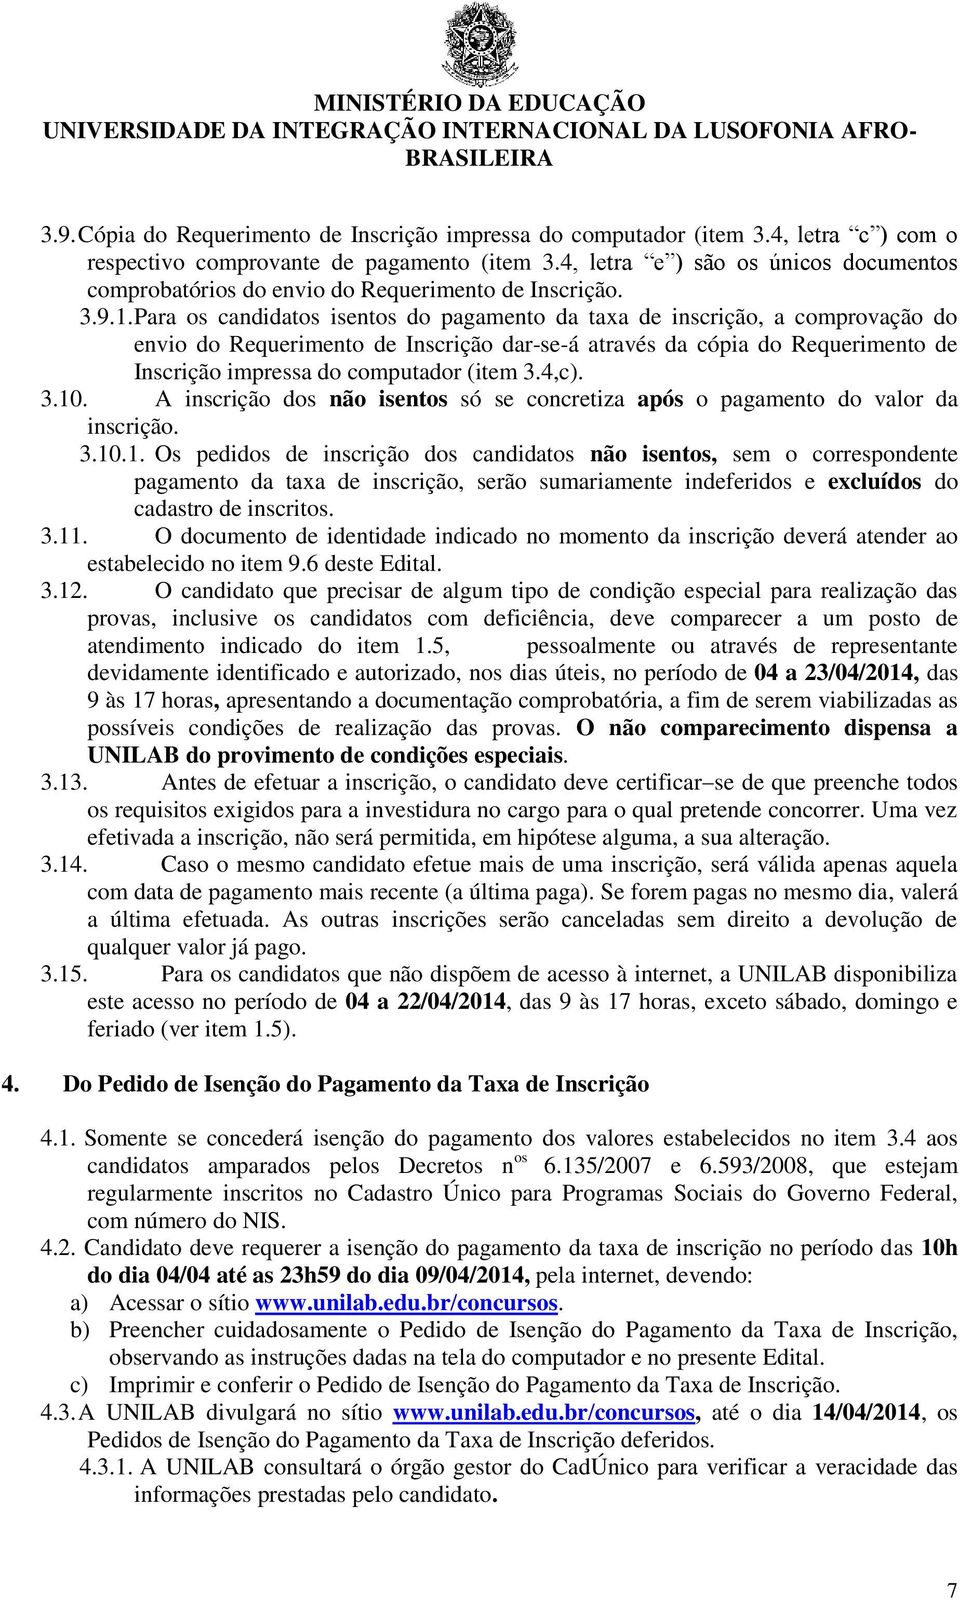 Para os candidatos isentos do pagamento da taxa de inscrição, a comprovação do envio do Requerimento de Inscrição dar-se-á através da cópia do Requerimento de Inscrição impressa do computador (item 3.